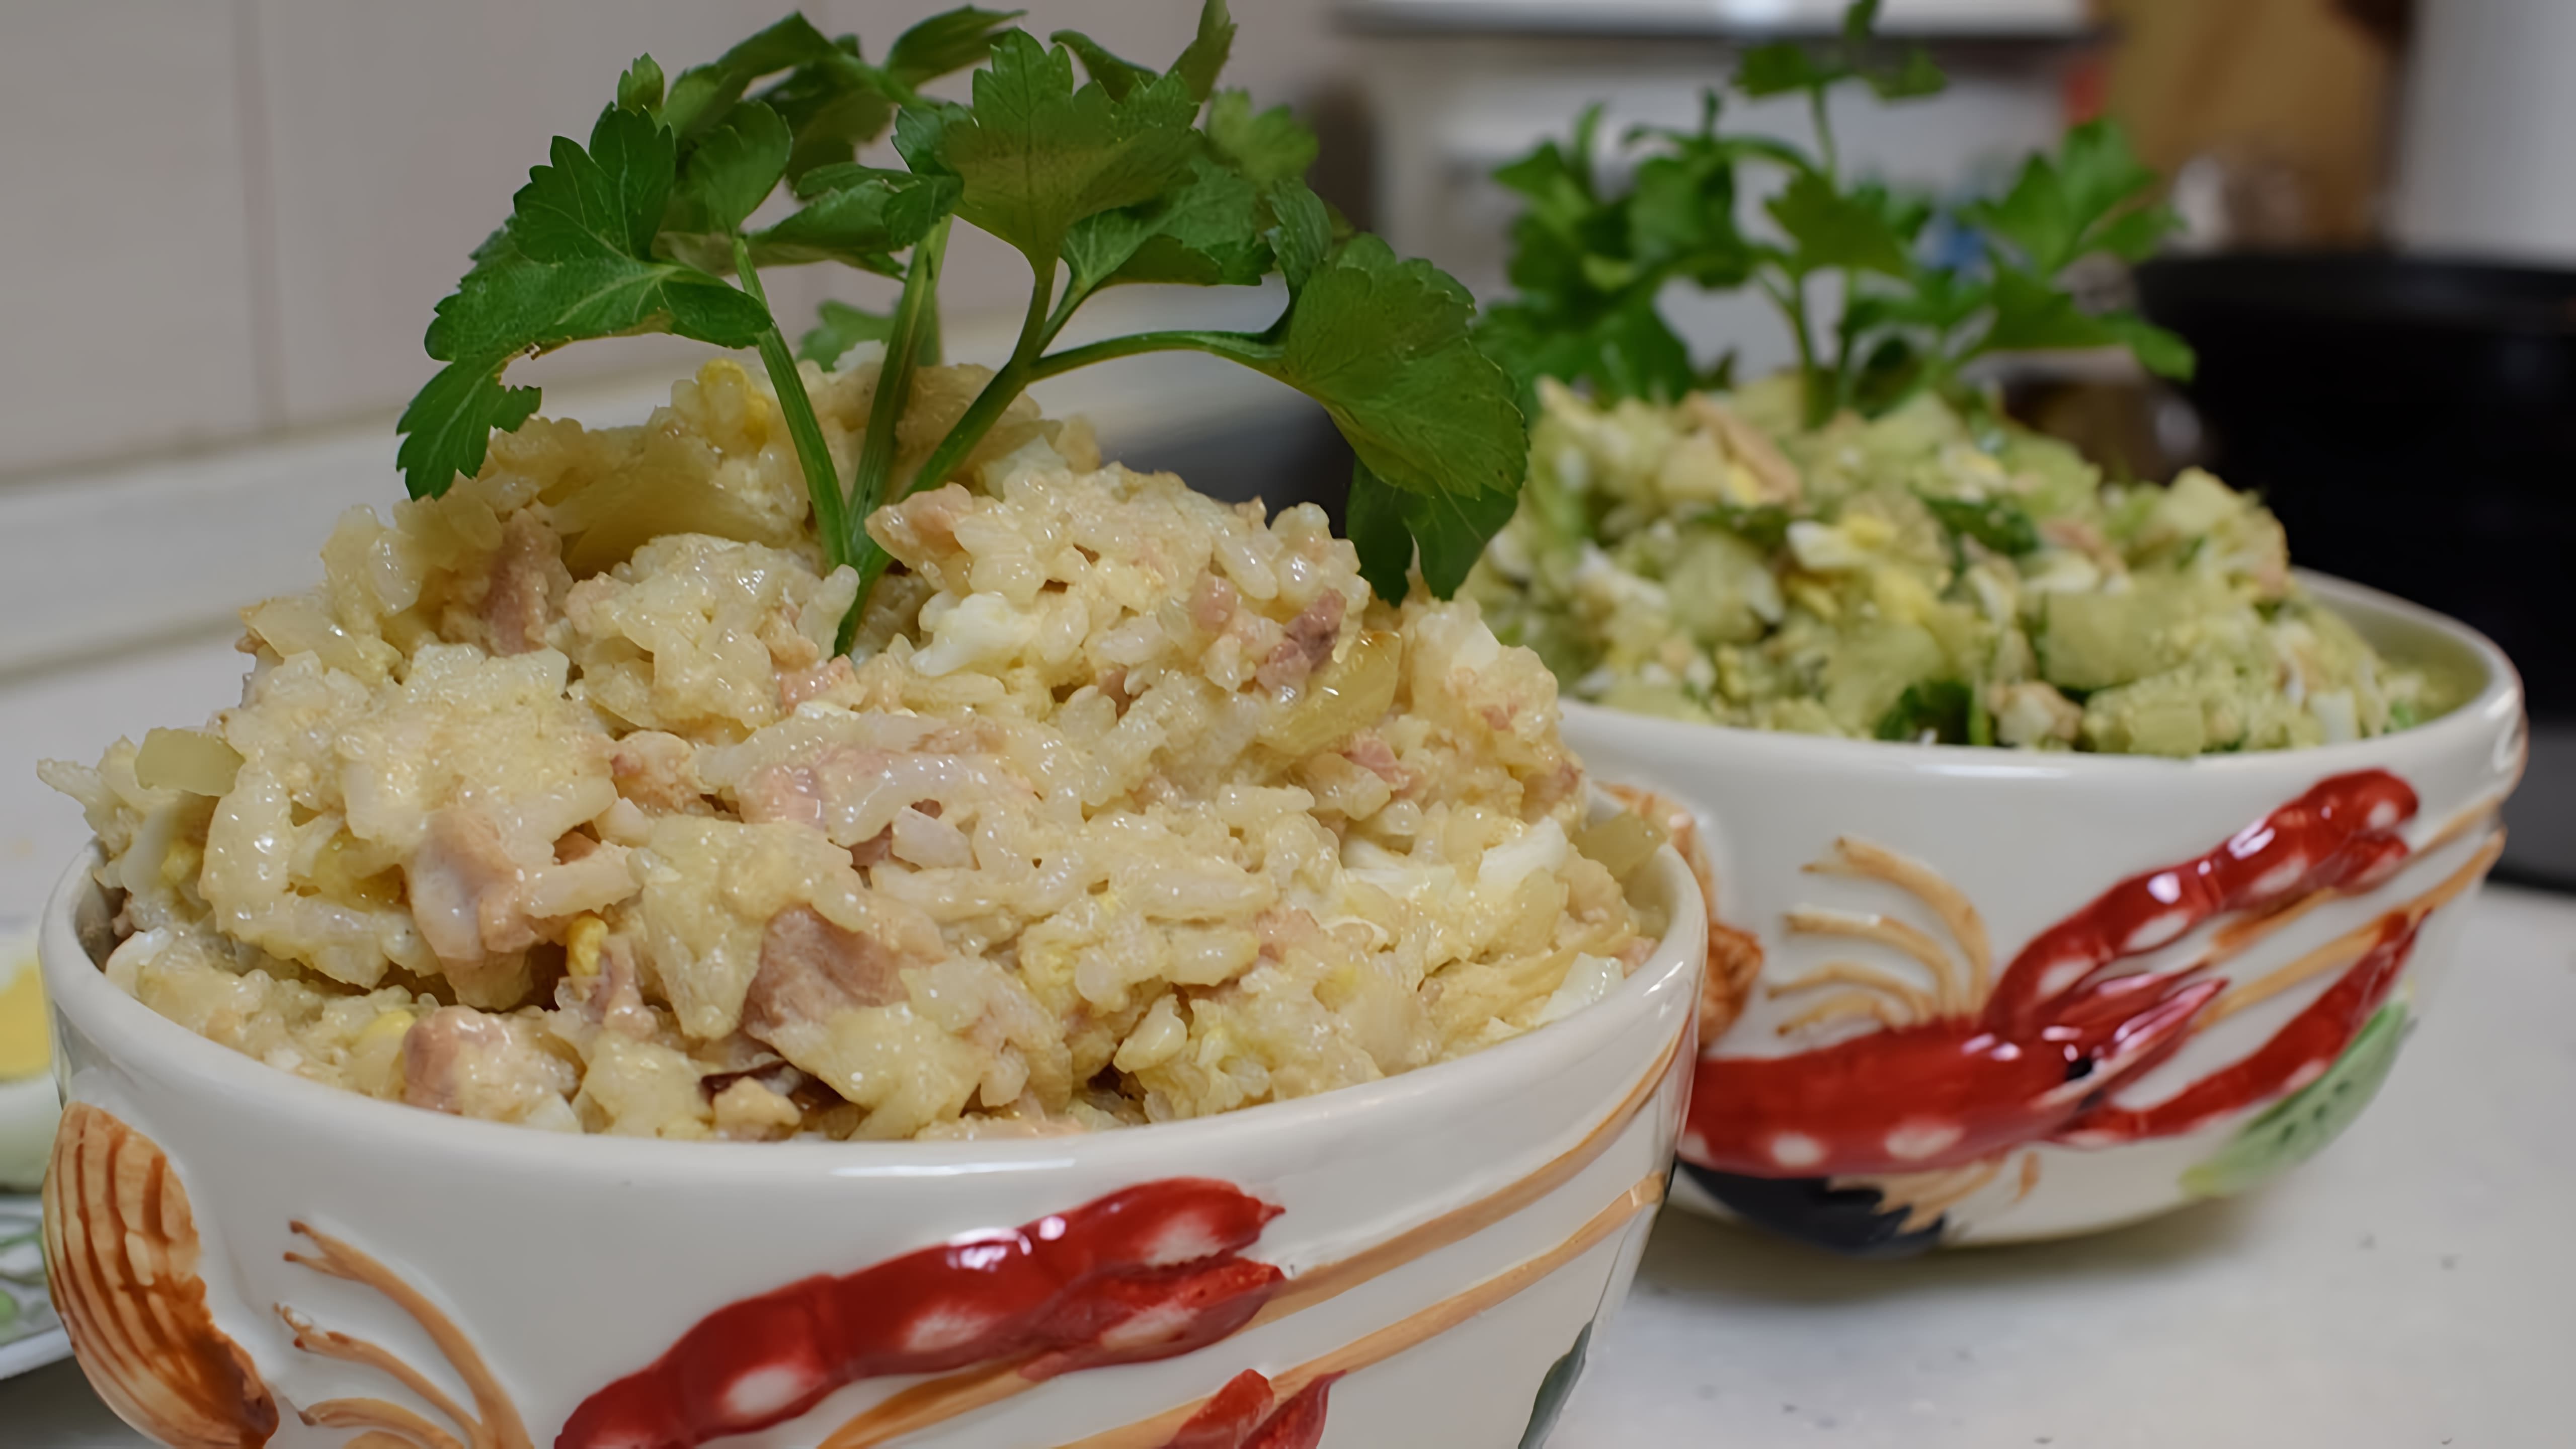 В этом видео демонстрируется приготовление двух вариантов салата из печени трески: традиционного с рисом и майонезом и овощного с растительным маслом